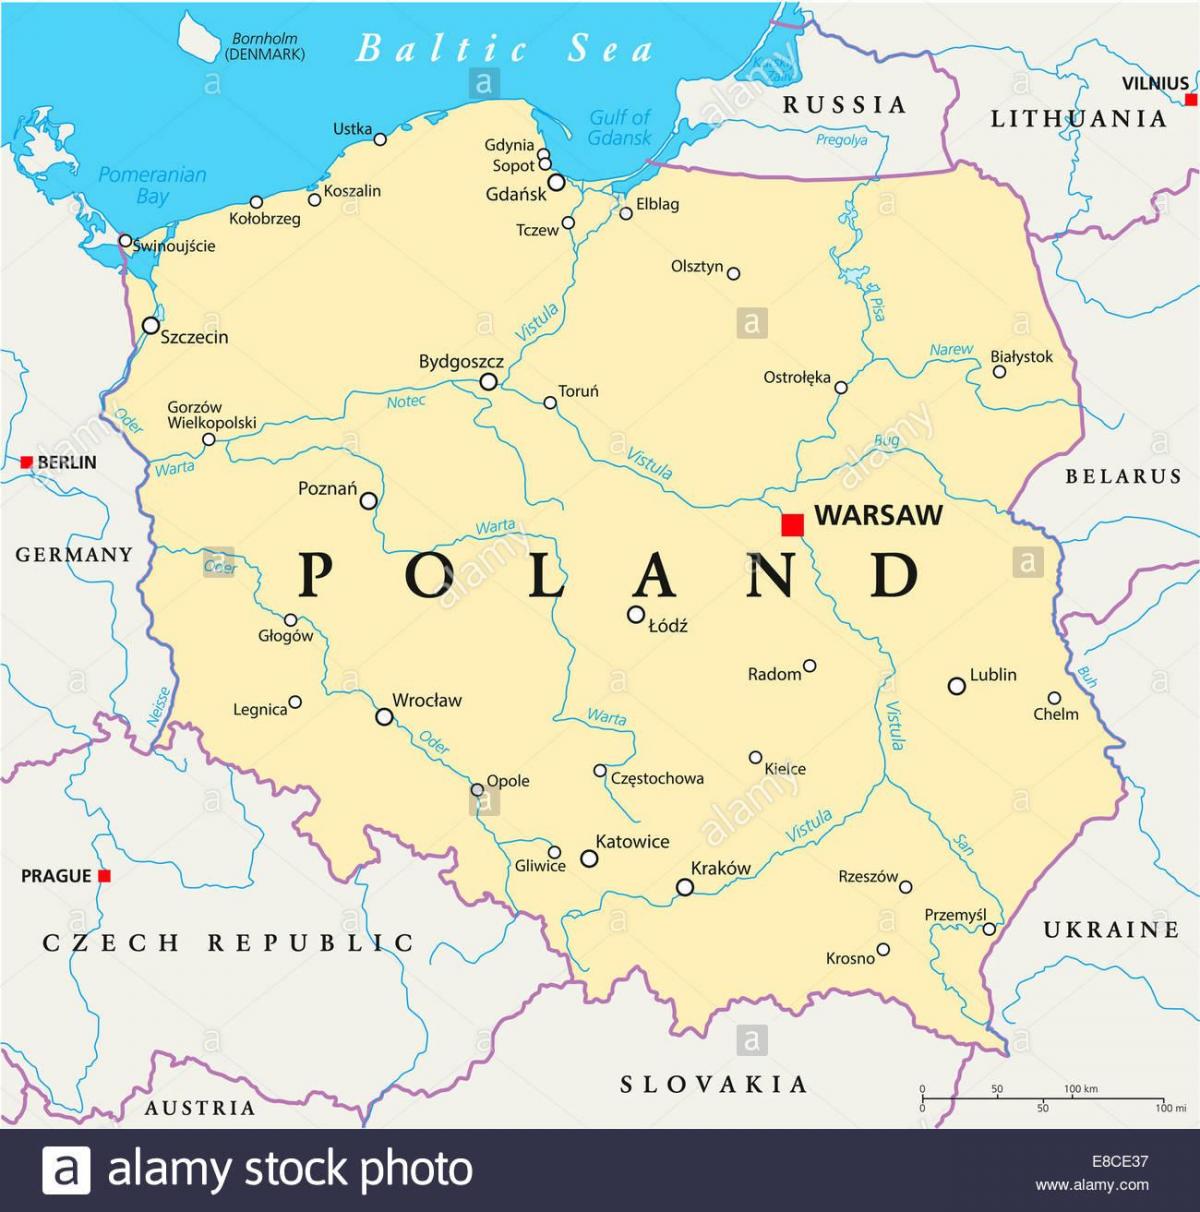 Варшава местоположение върху картата на света